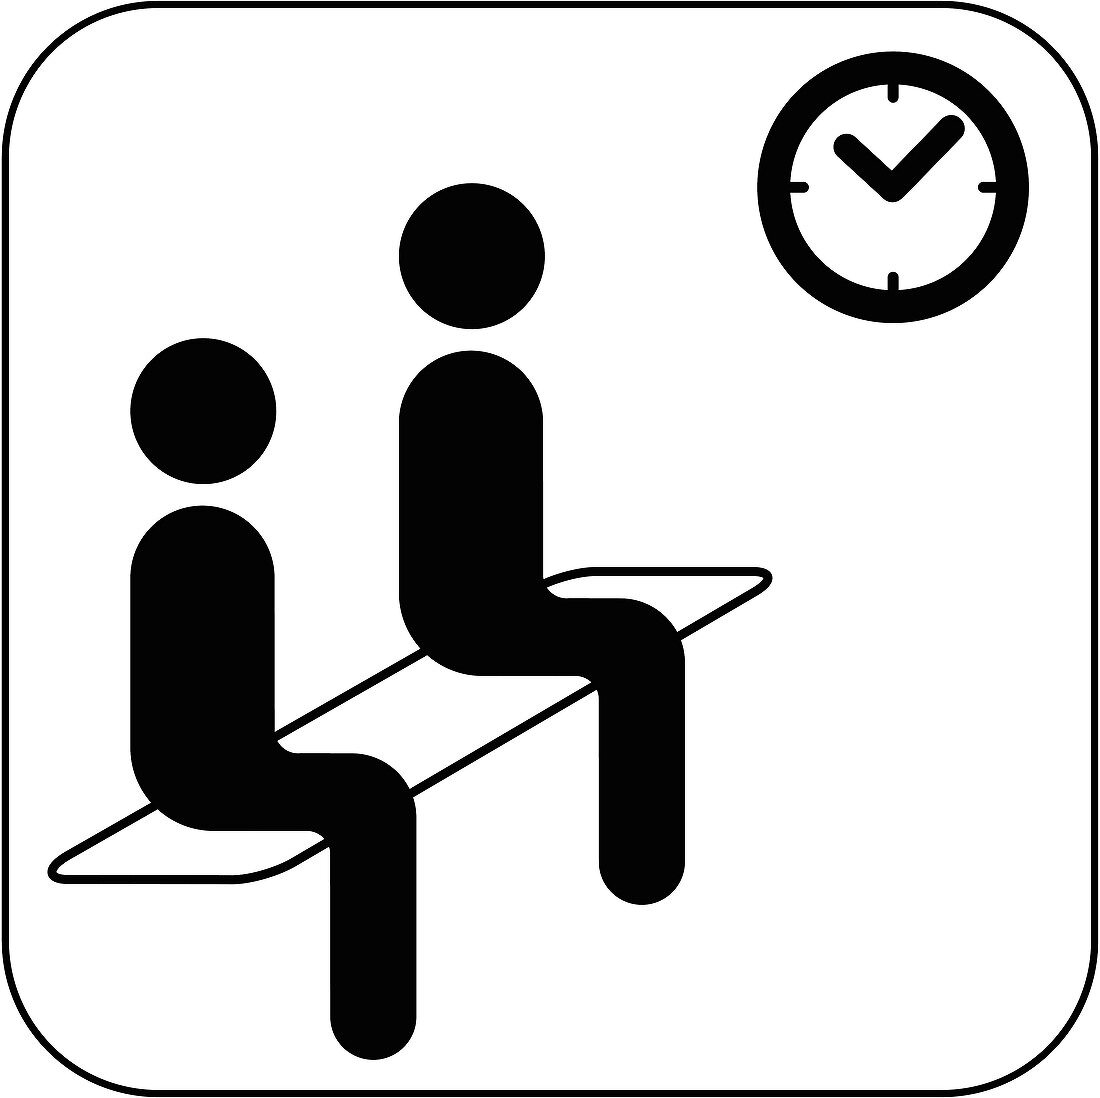 Waiting room symbol,artwork